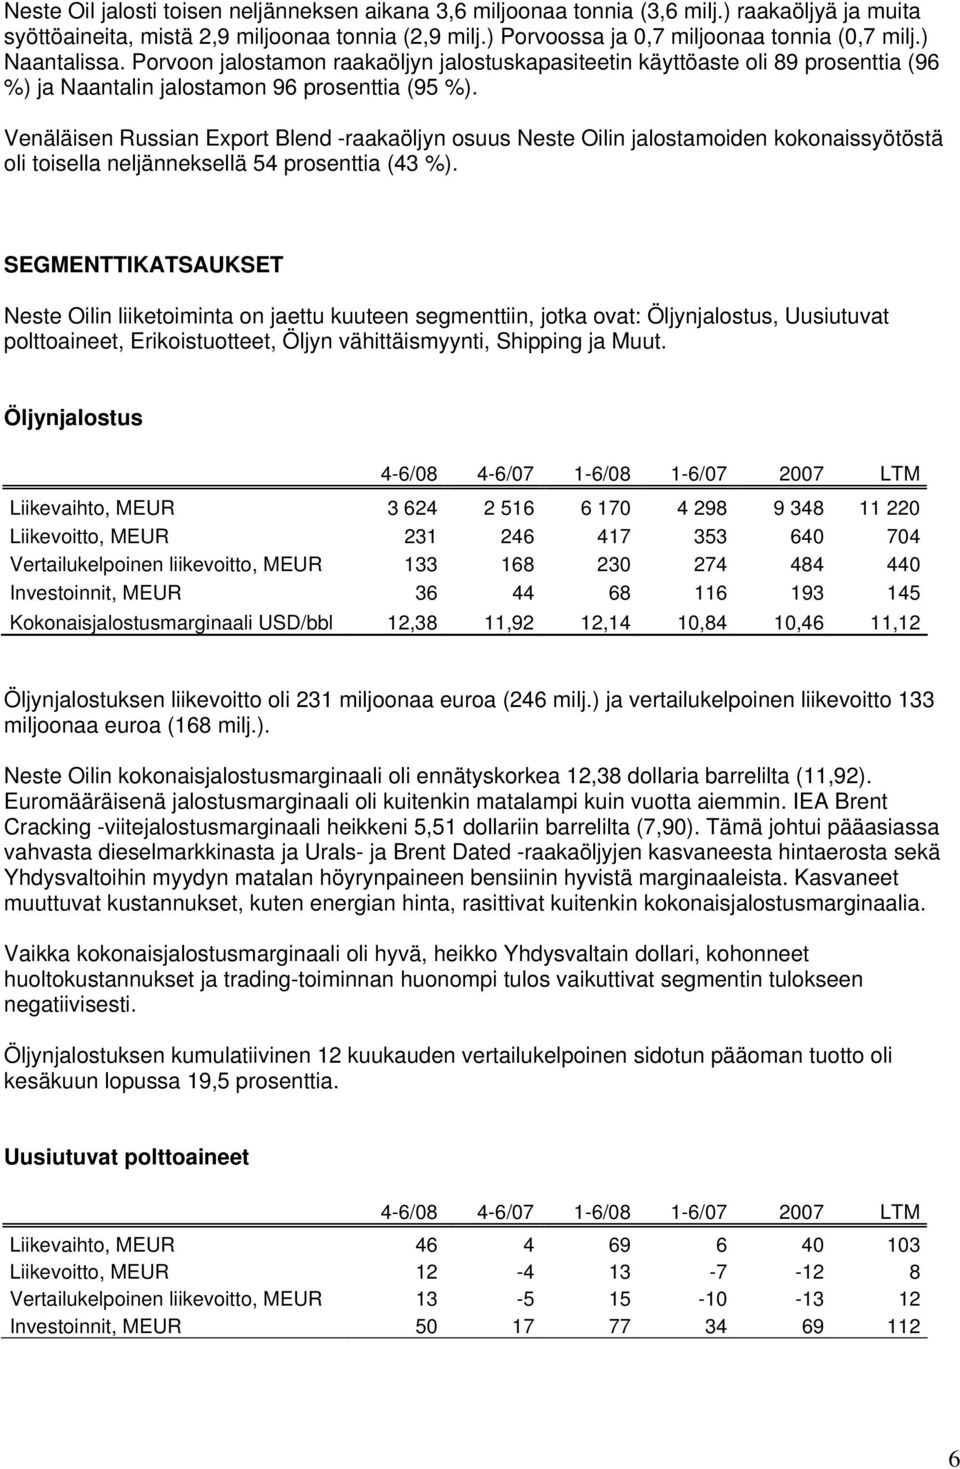 Venäläisen Russian Export Blend -raakaöljyn osuus Neste Oilin jalostamoiden kokonaissyötöstä oli toisella neljänneksellä 54 prosenttia (43 %).